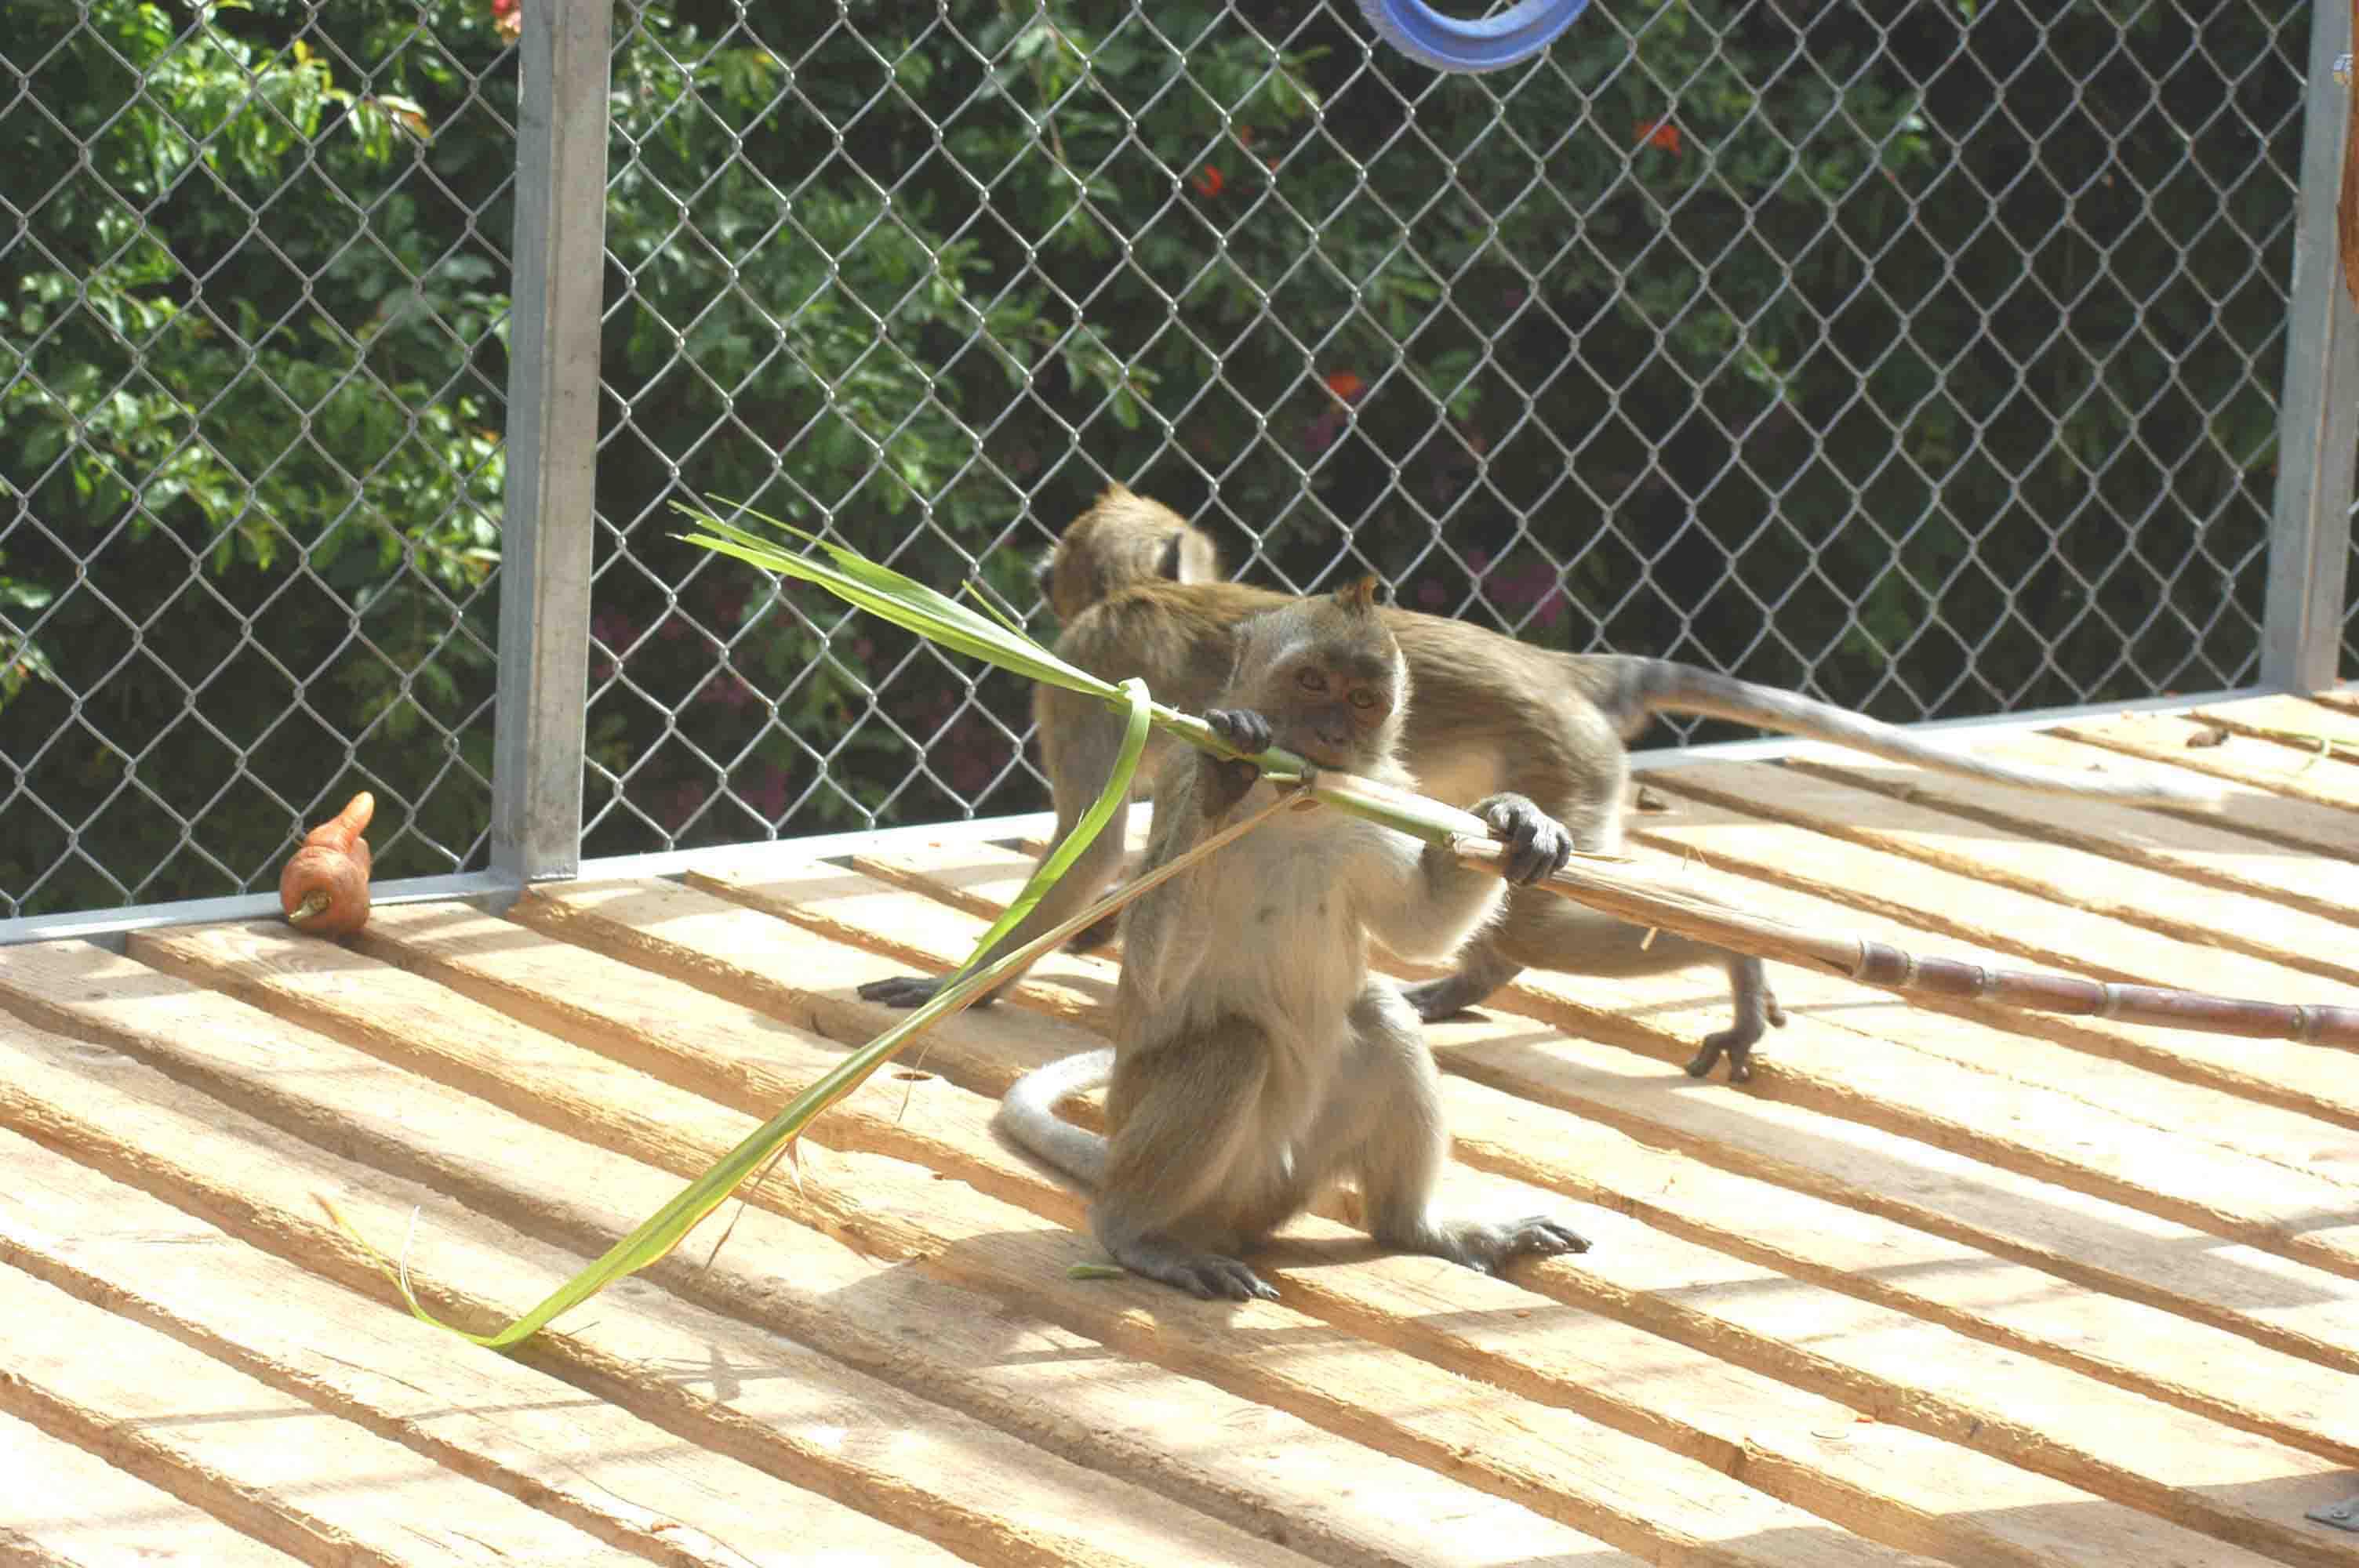 A young cynomolgus macaque eating sugar cane